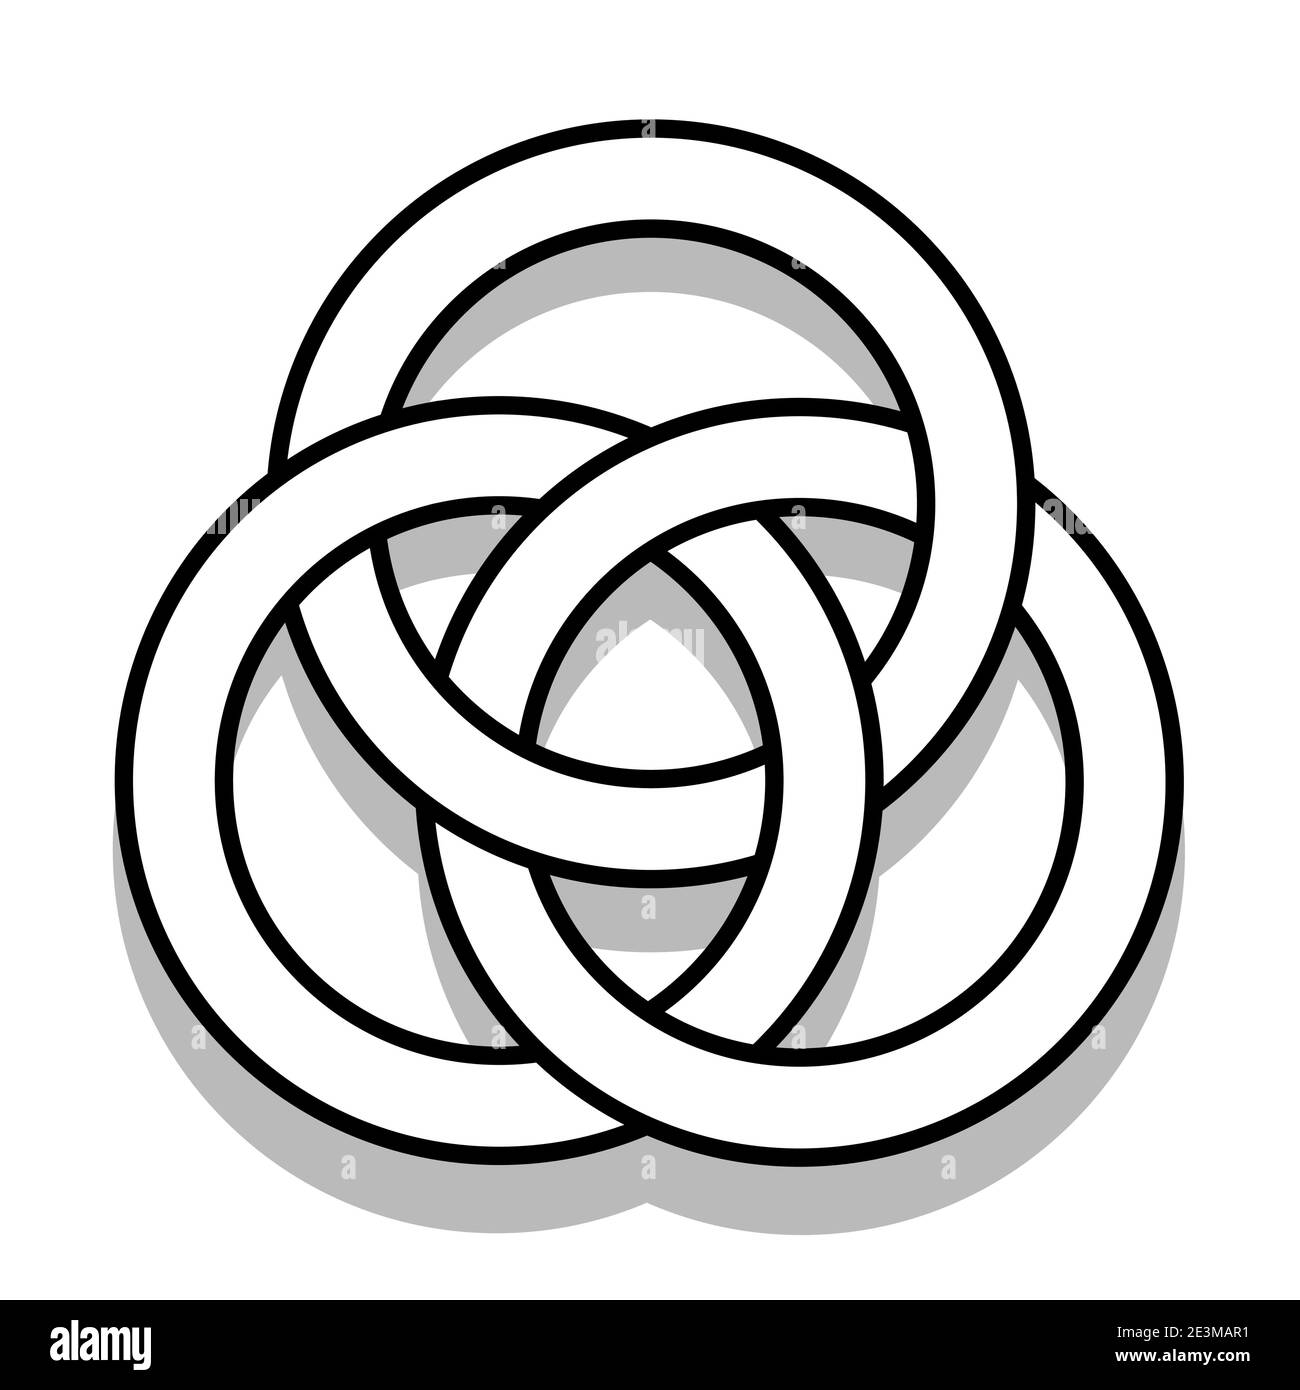 Ilustración de círculos de contorno imposible vinculados, también conocidos  como anillos de Borromeo Imagen Vector de stock - Alamy